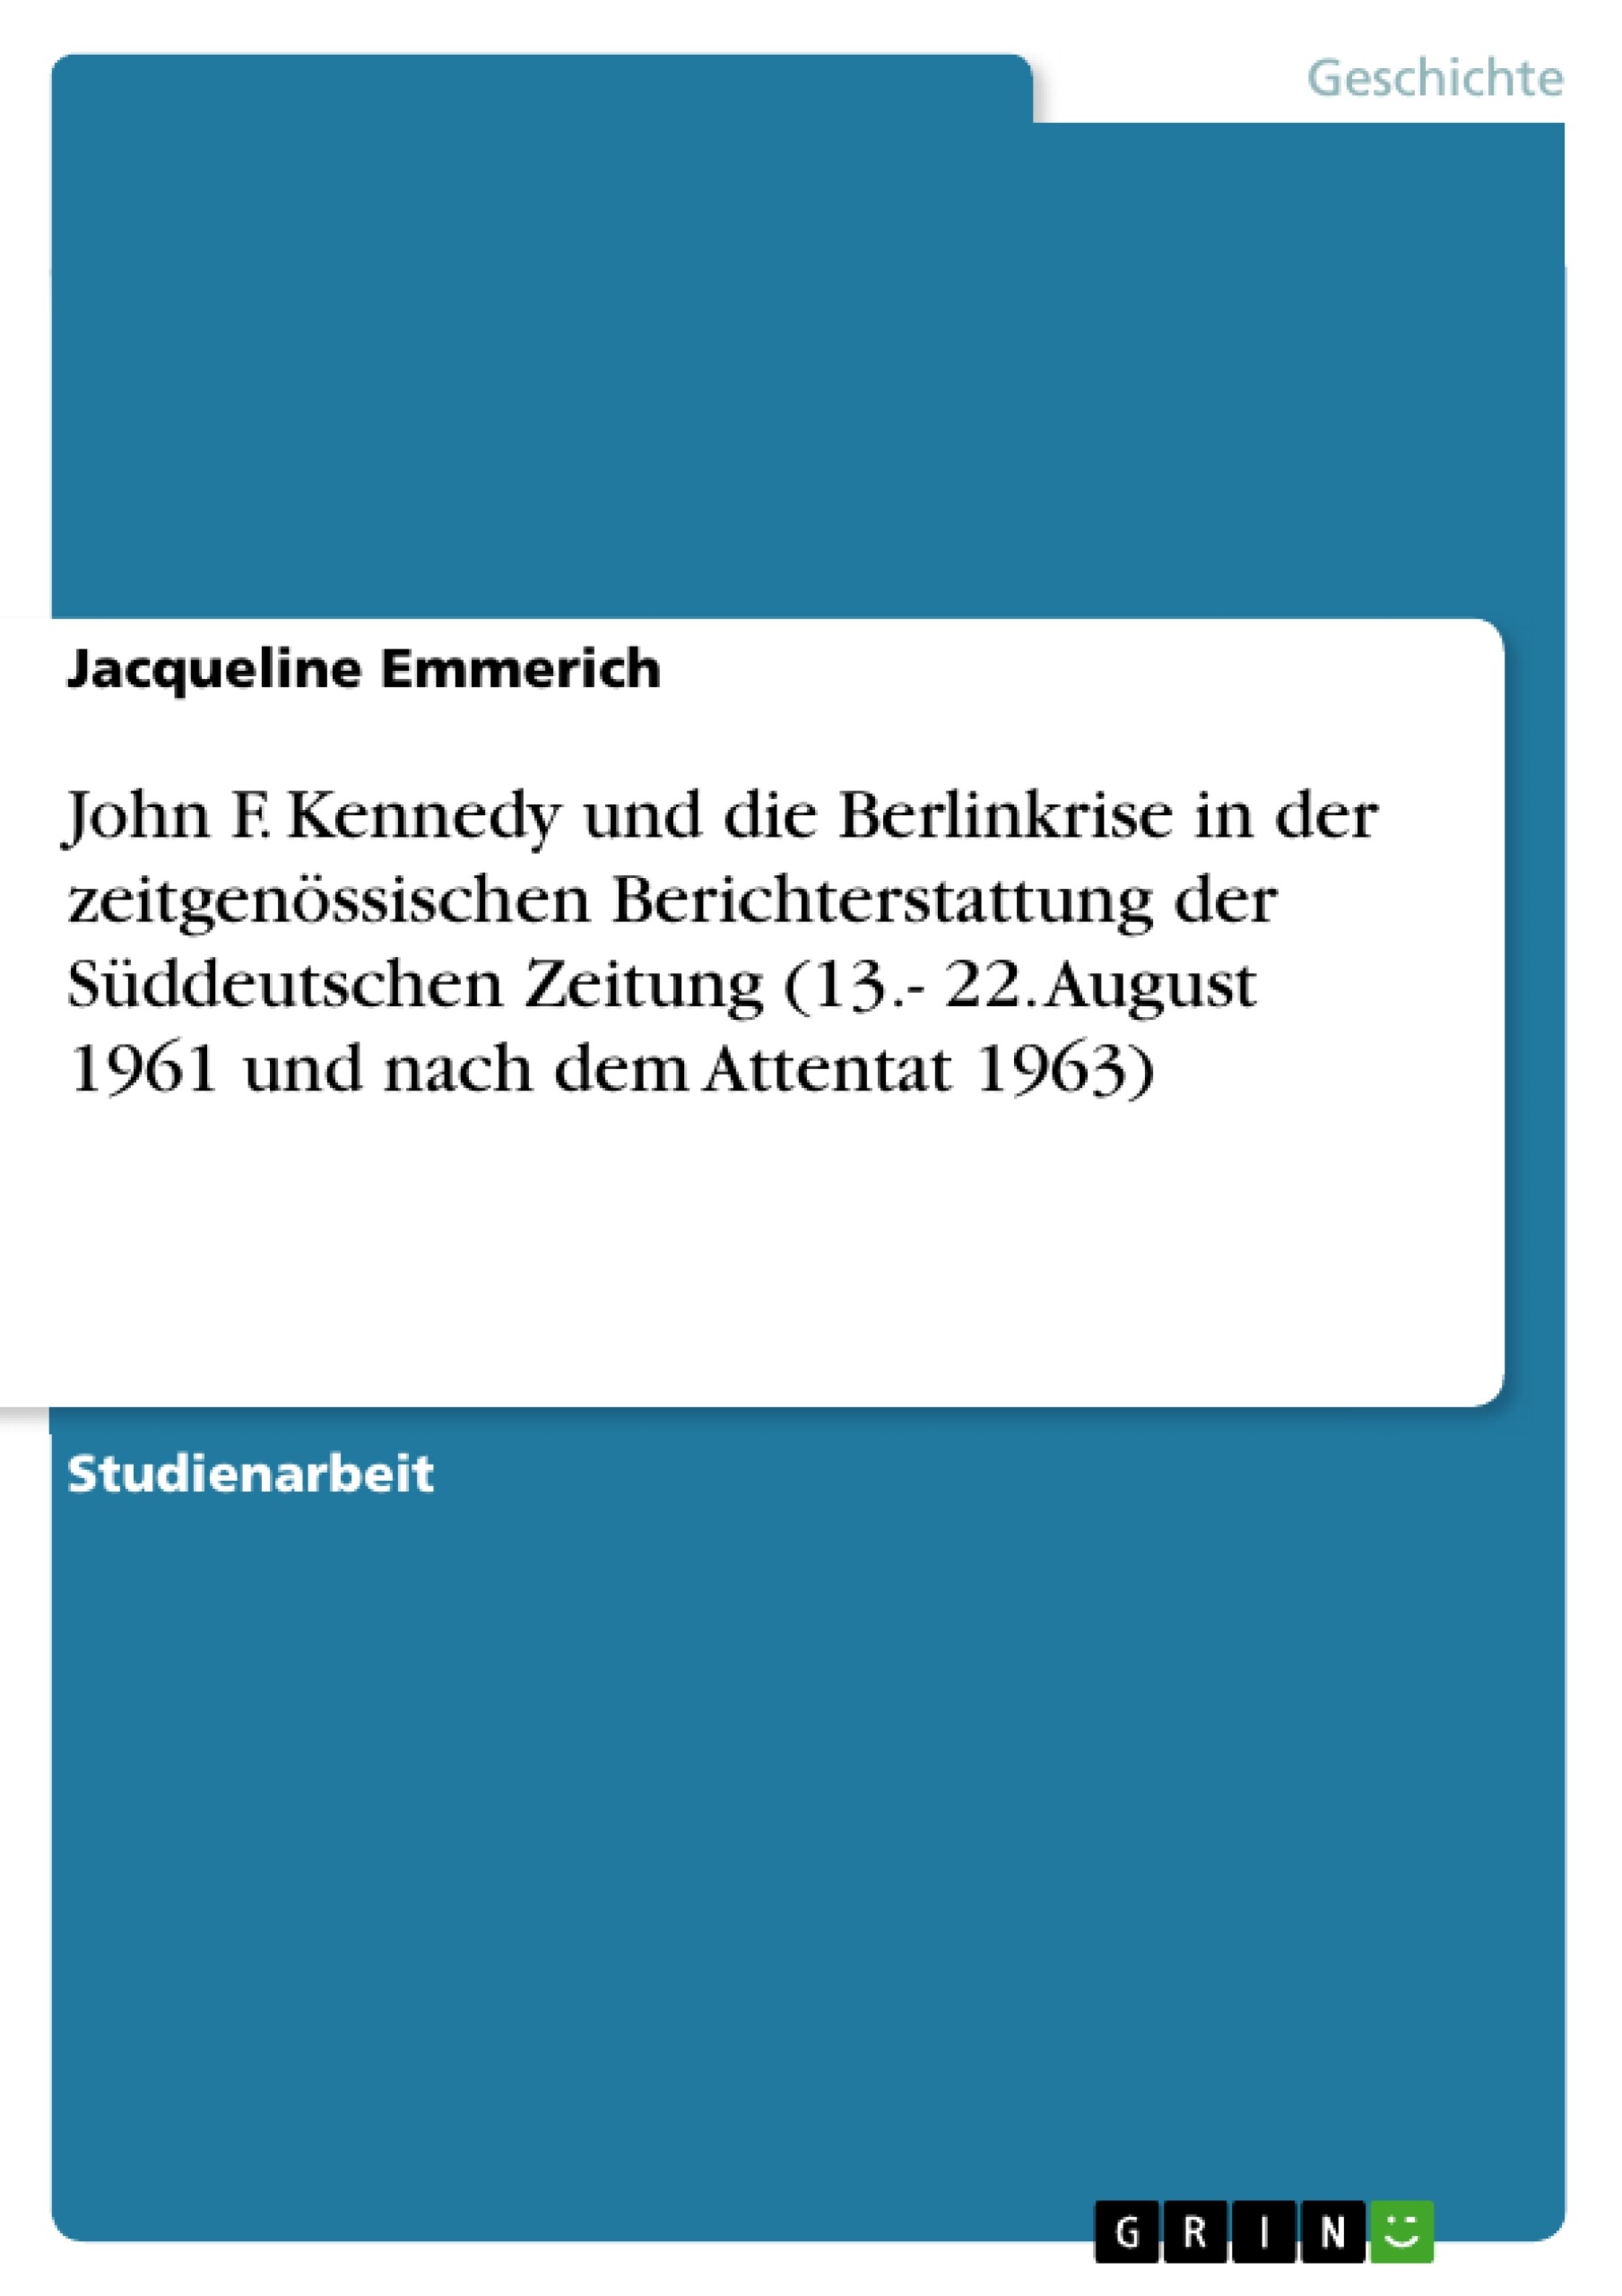 John F. Kennedy und die Berlinkrise in der zeitgenössischen Berichterstattung der Süddeutschen Zeitung (13.- 22. August 1961 und nach dem Attentat 1963)